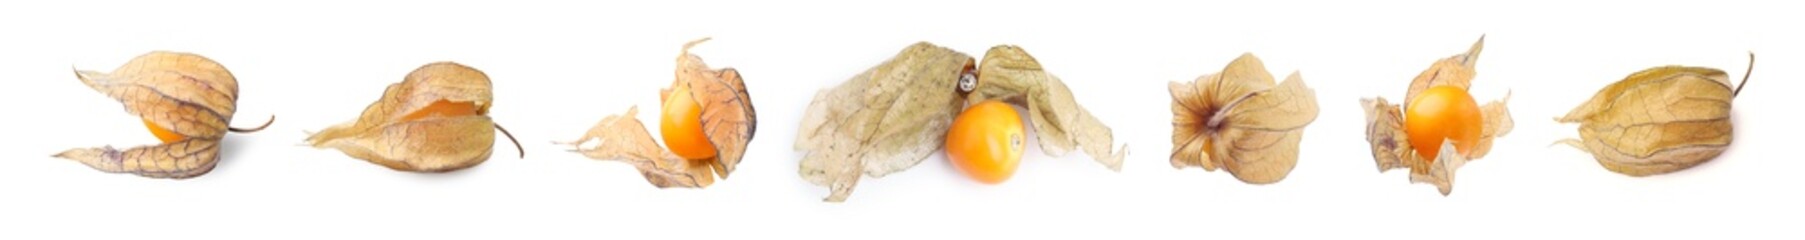 Ripe orange physalis fruits with calyx isolated on white, set